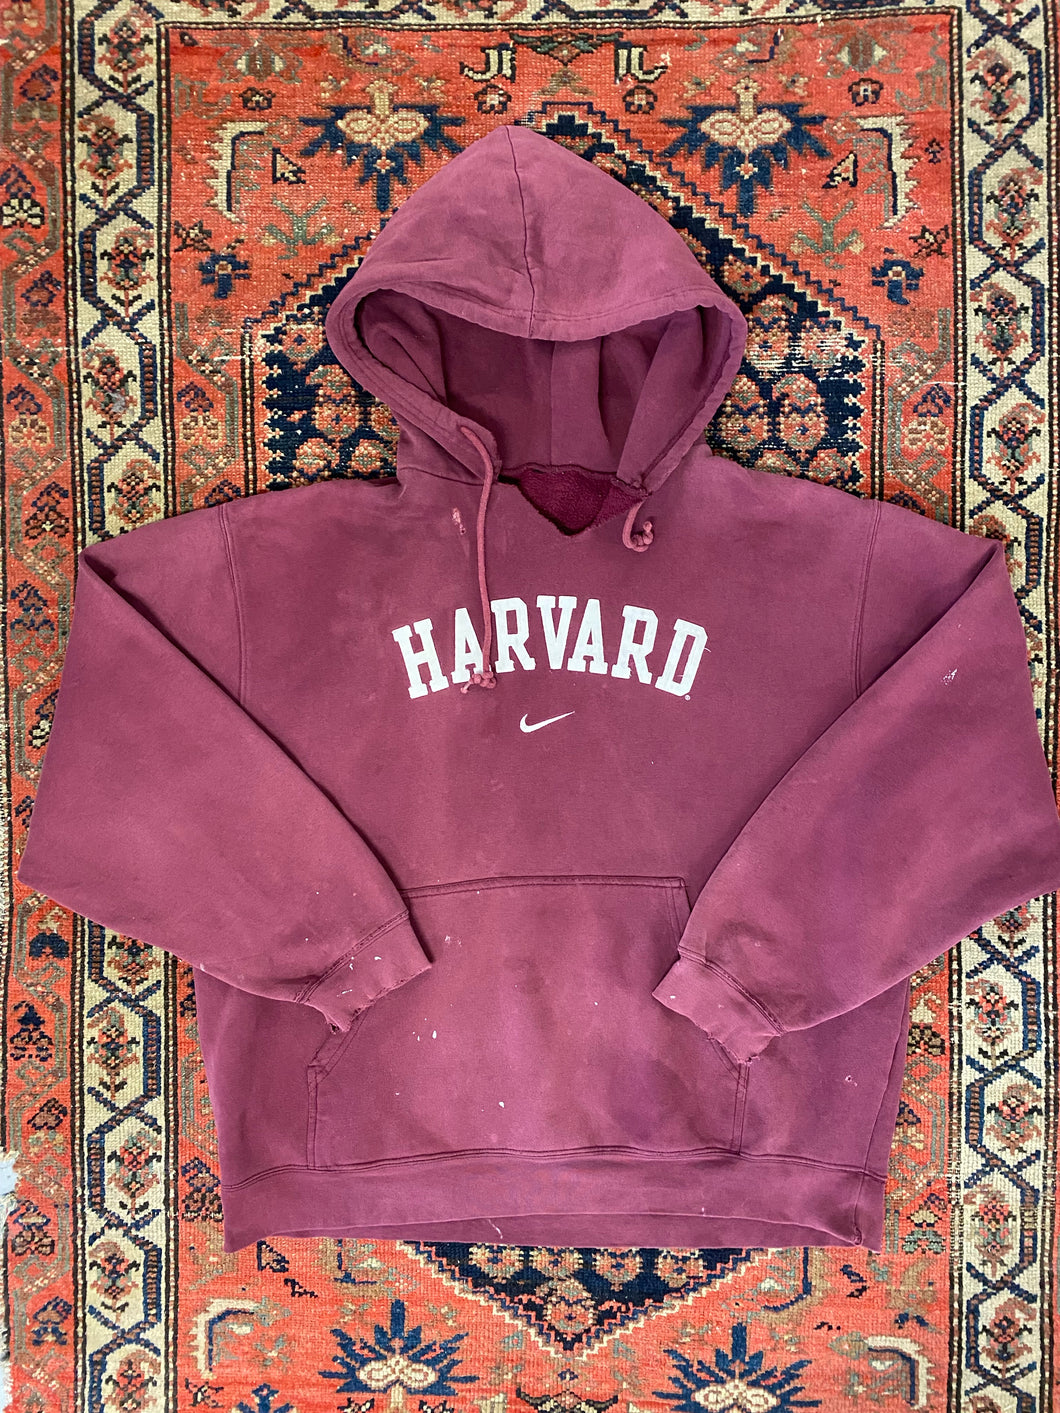 Vintage Harvard Nike Hoodie - L/XL